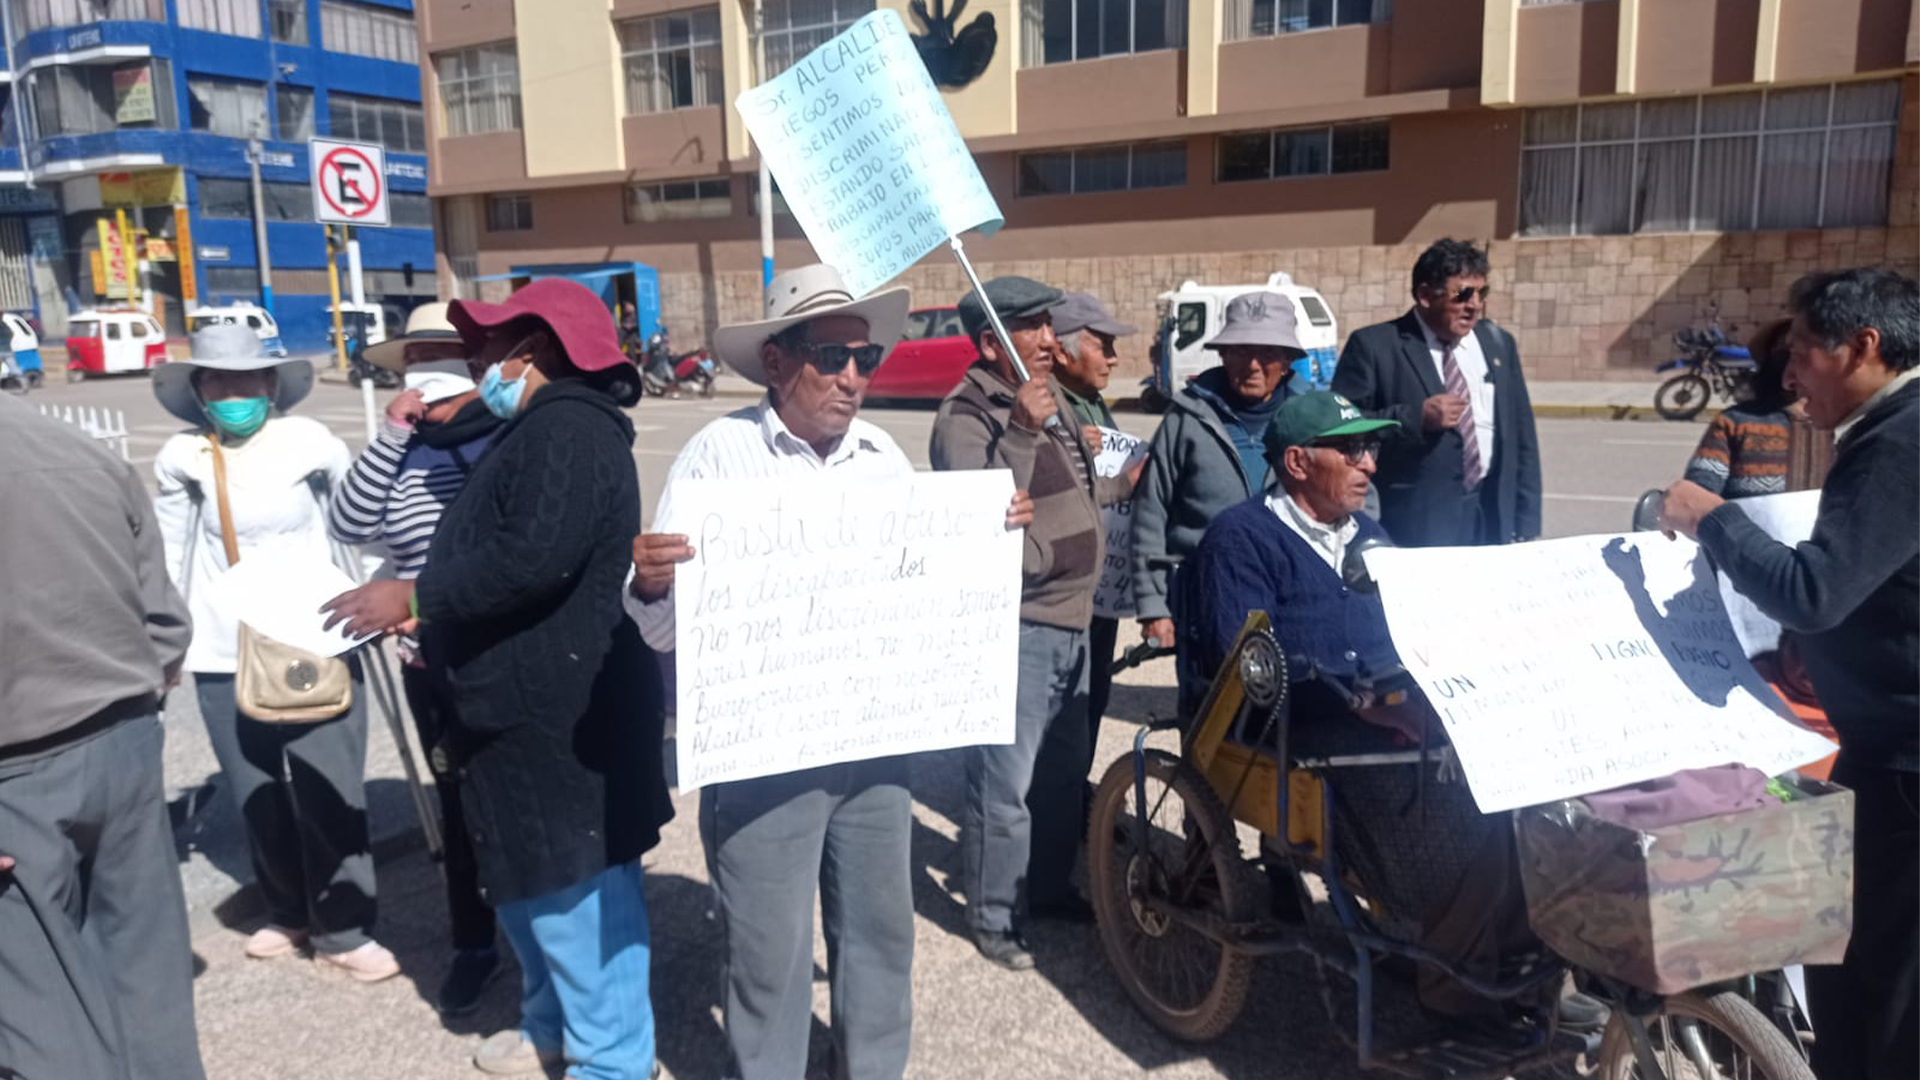 Juliaca, personas con discapacidad denunciaron maltrato de parte de la municipalidad